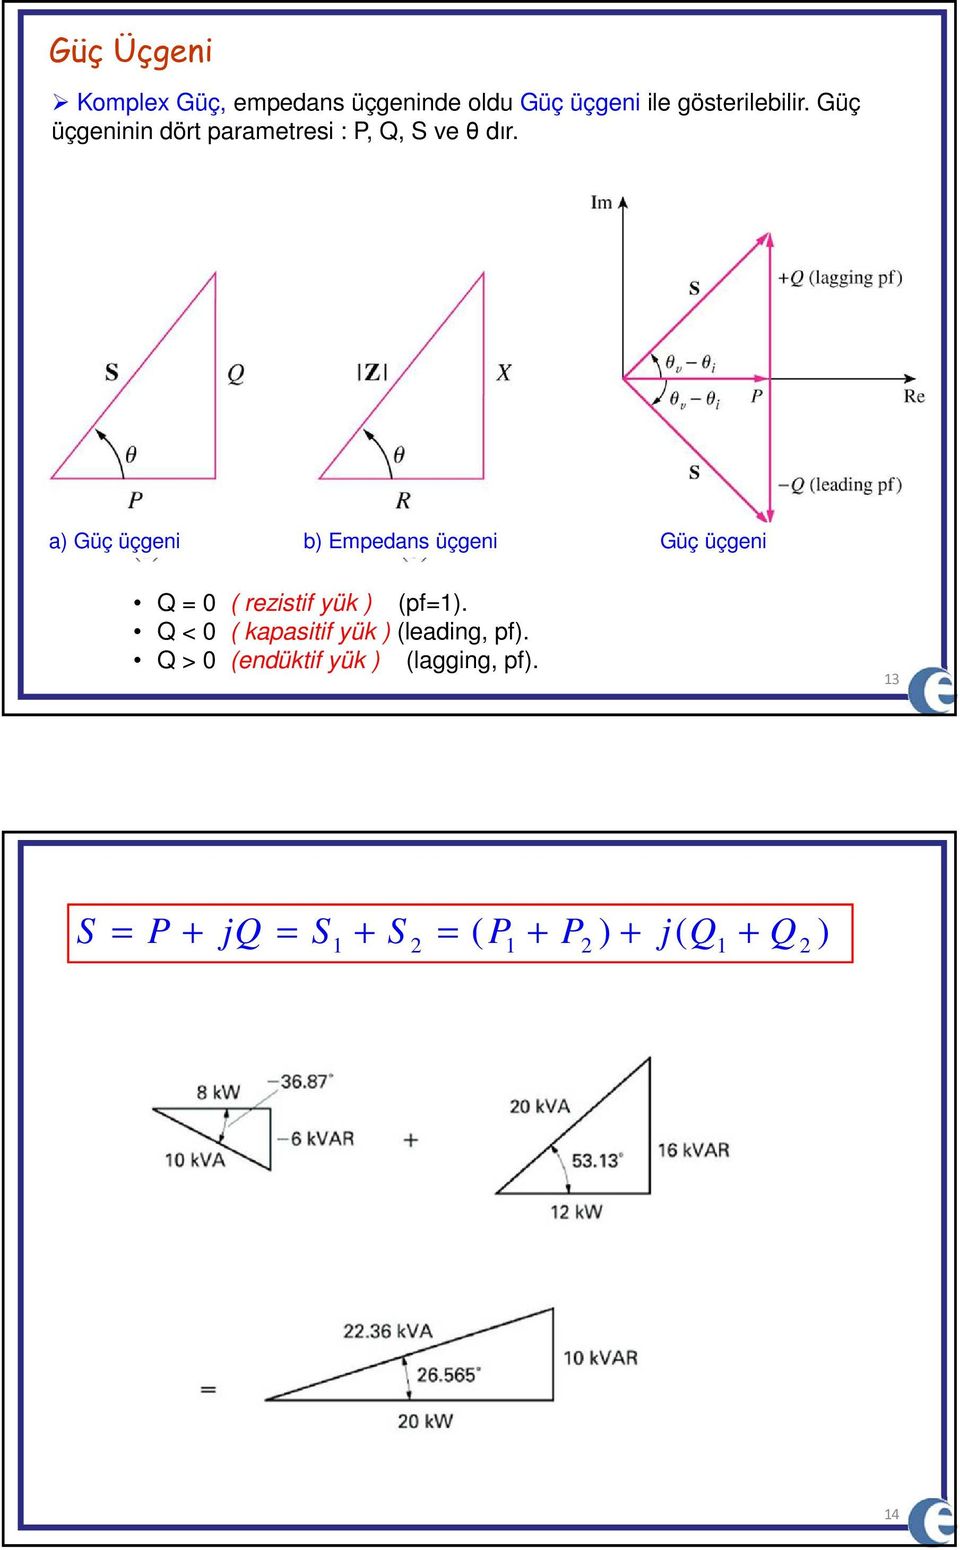 a Güç üçgen b Epedans üçgen Güç üçgen Q ( rezsf yük (pf.